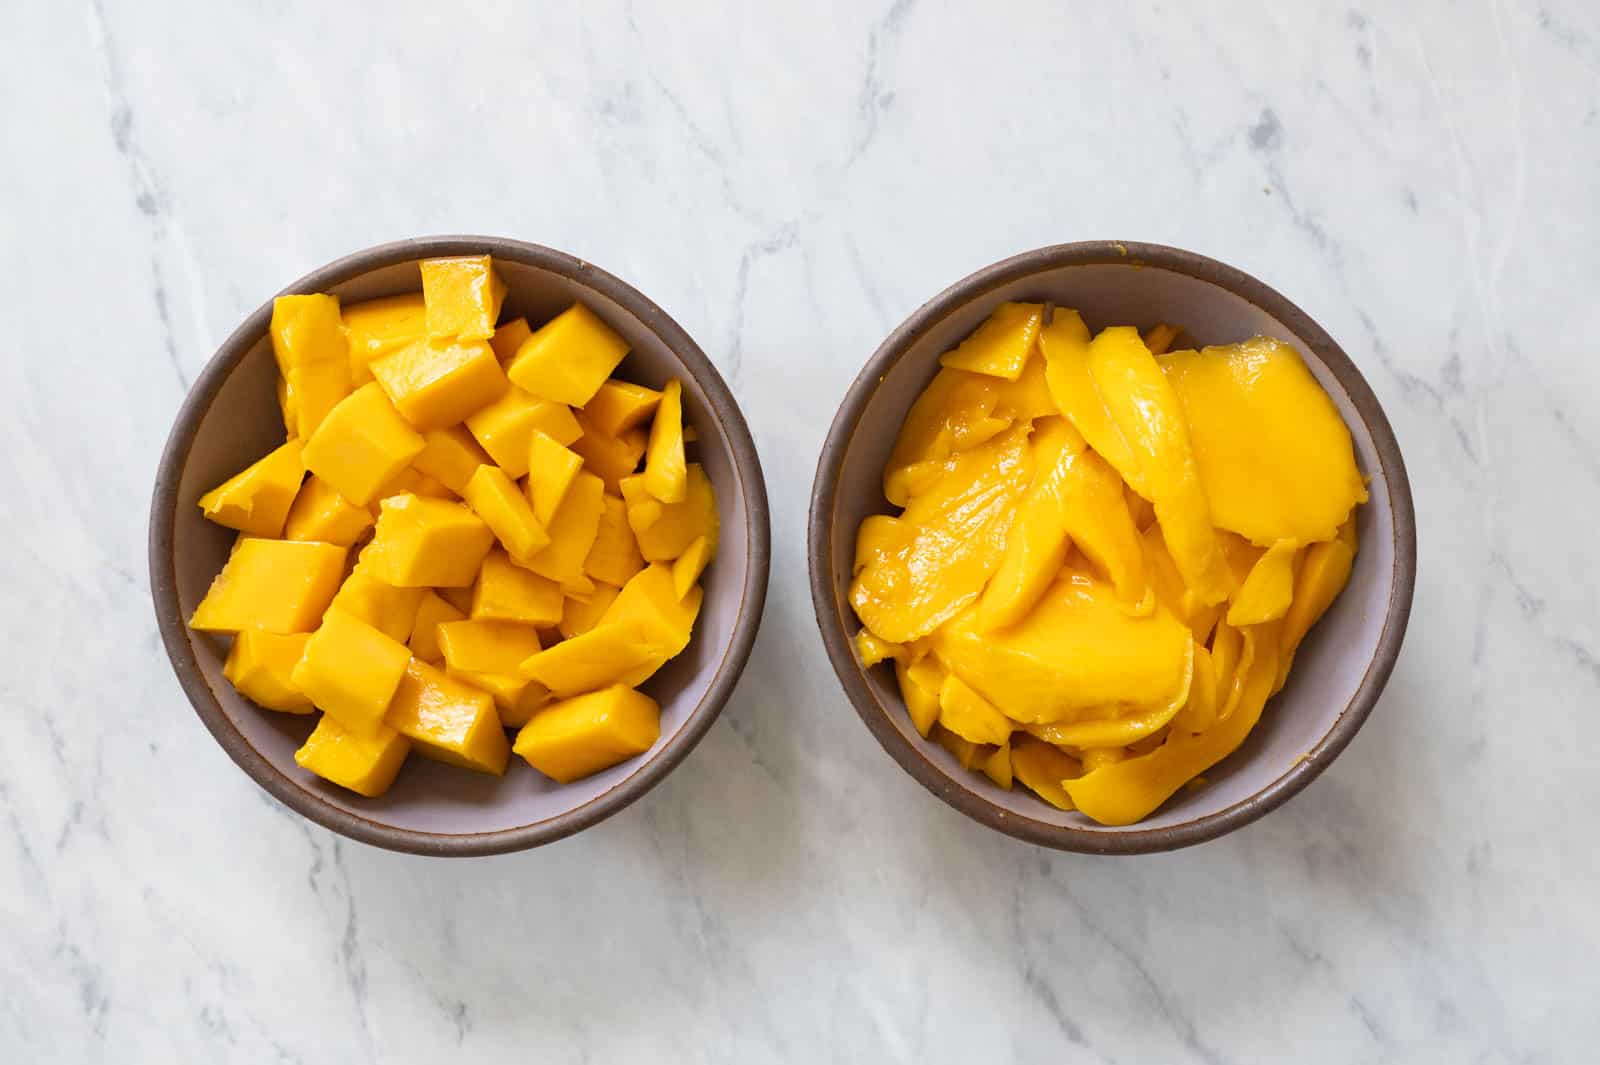 Cut mangoes